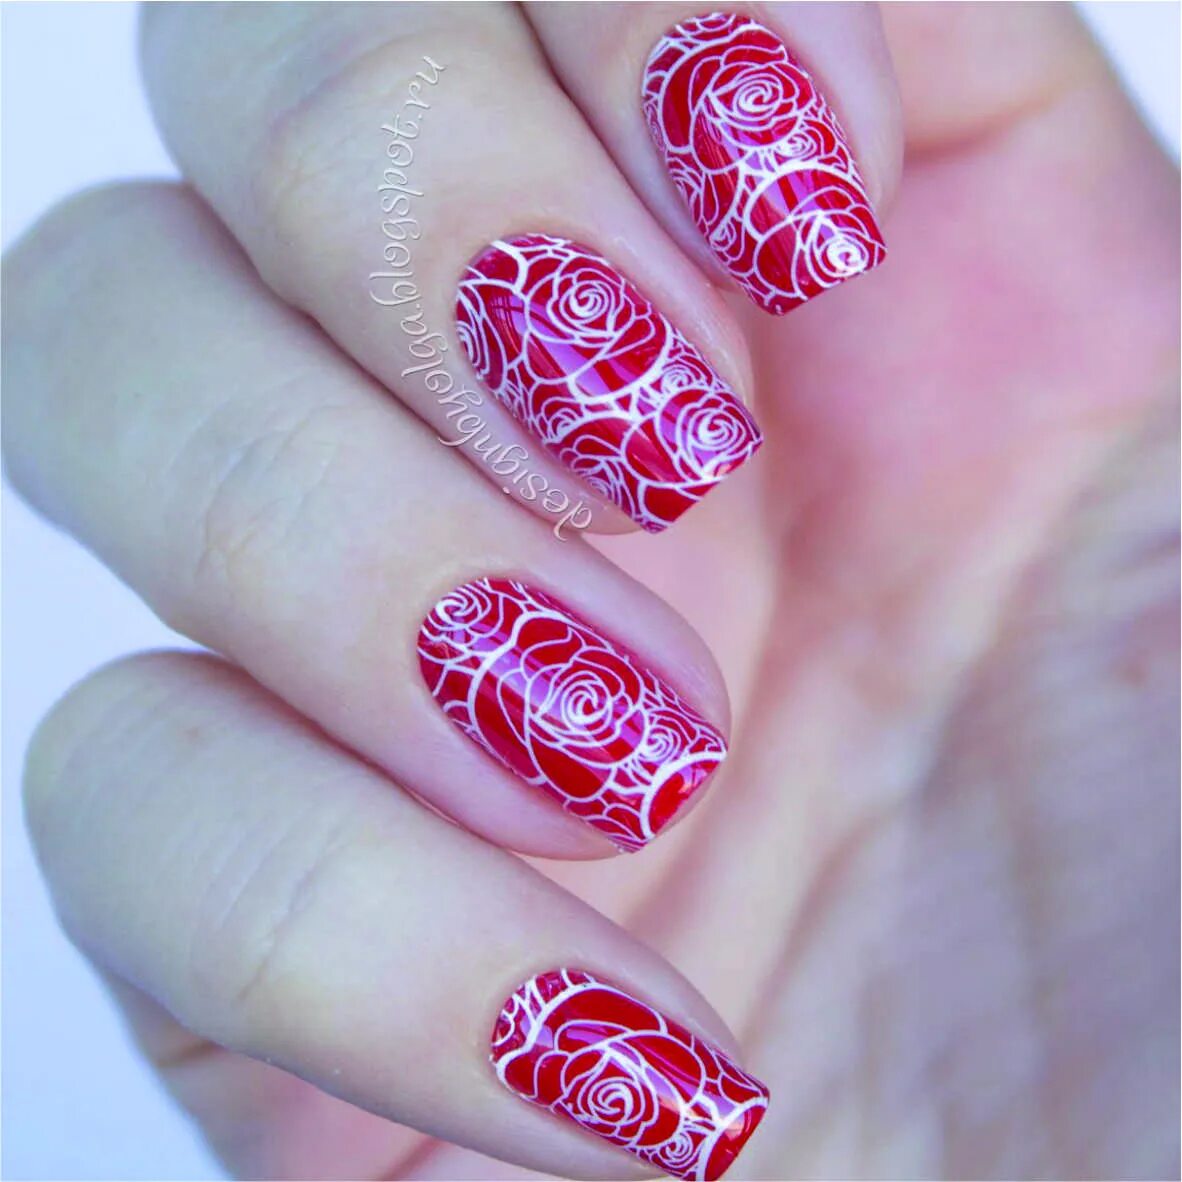 Дизайн ногтей розы. Ногти со стемпингом. Стемпинг на красных ногтях. Стемпинг на Красном маникюре. Маникюр с розами.